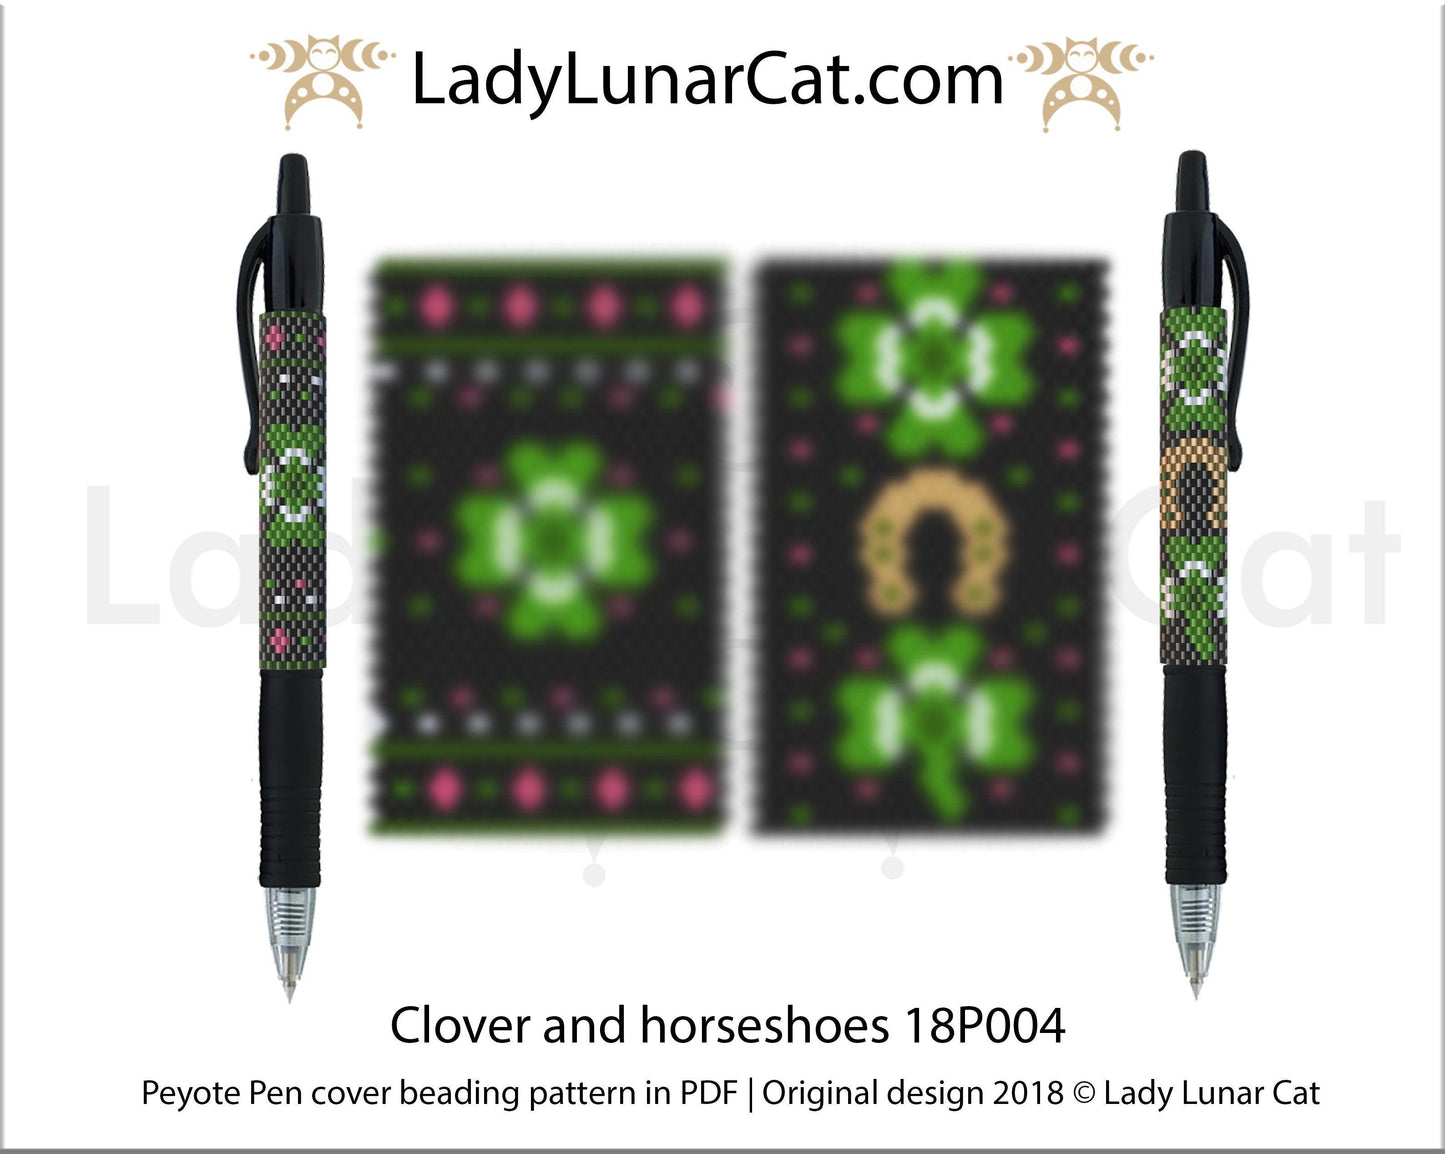 Four Leaf Clover Loom Bracelet Instant Download Pattern - Off the